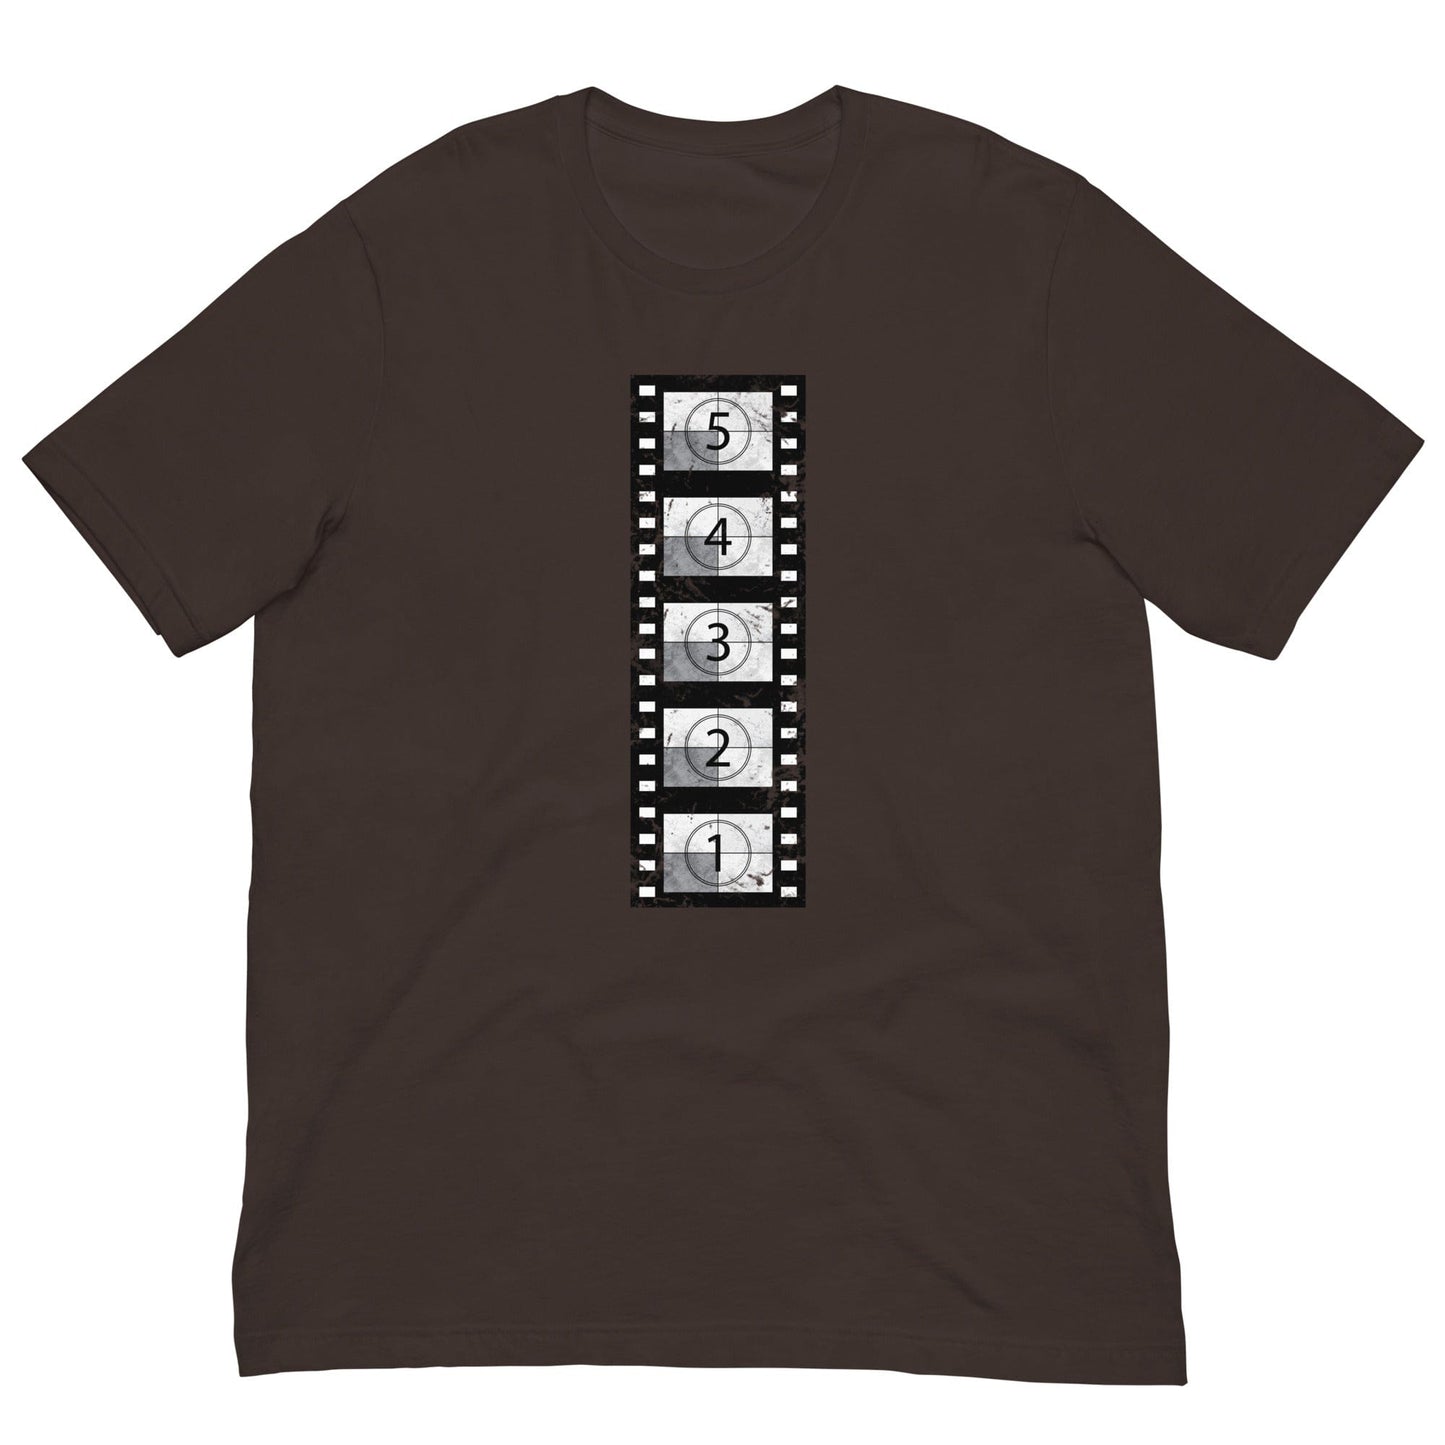 Vintage Film Reel T-shirt Brown / S